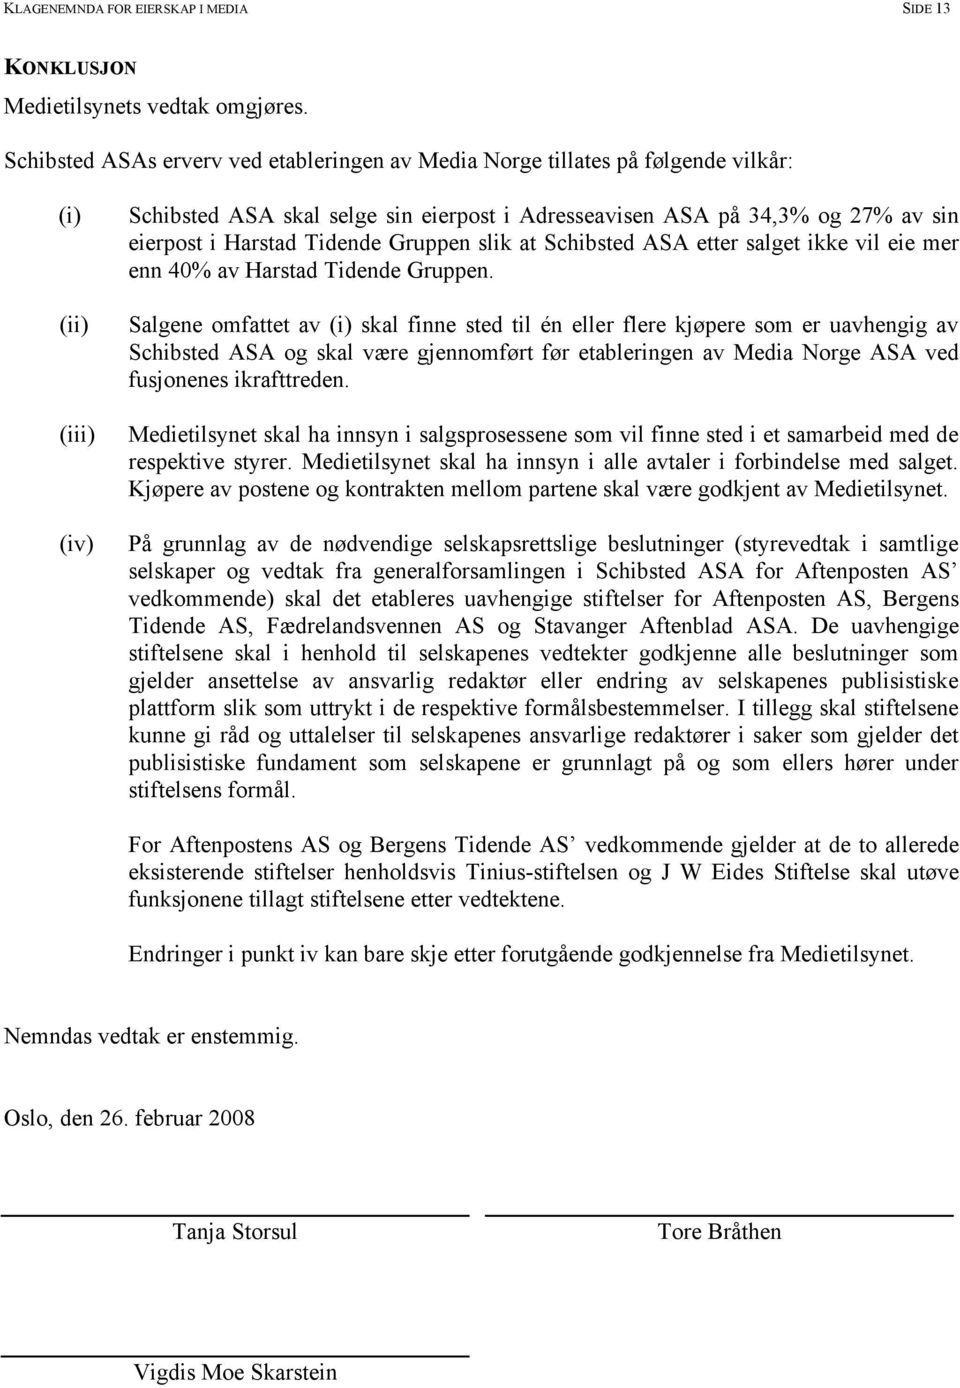 Harstad Tidende Gruppen slik at Schibsted ASA etter salget ikke vil eie mer enn 40% av Harstad Tidende Gruppen.